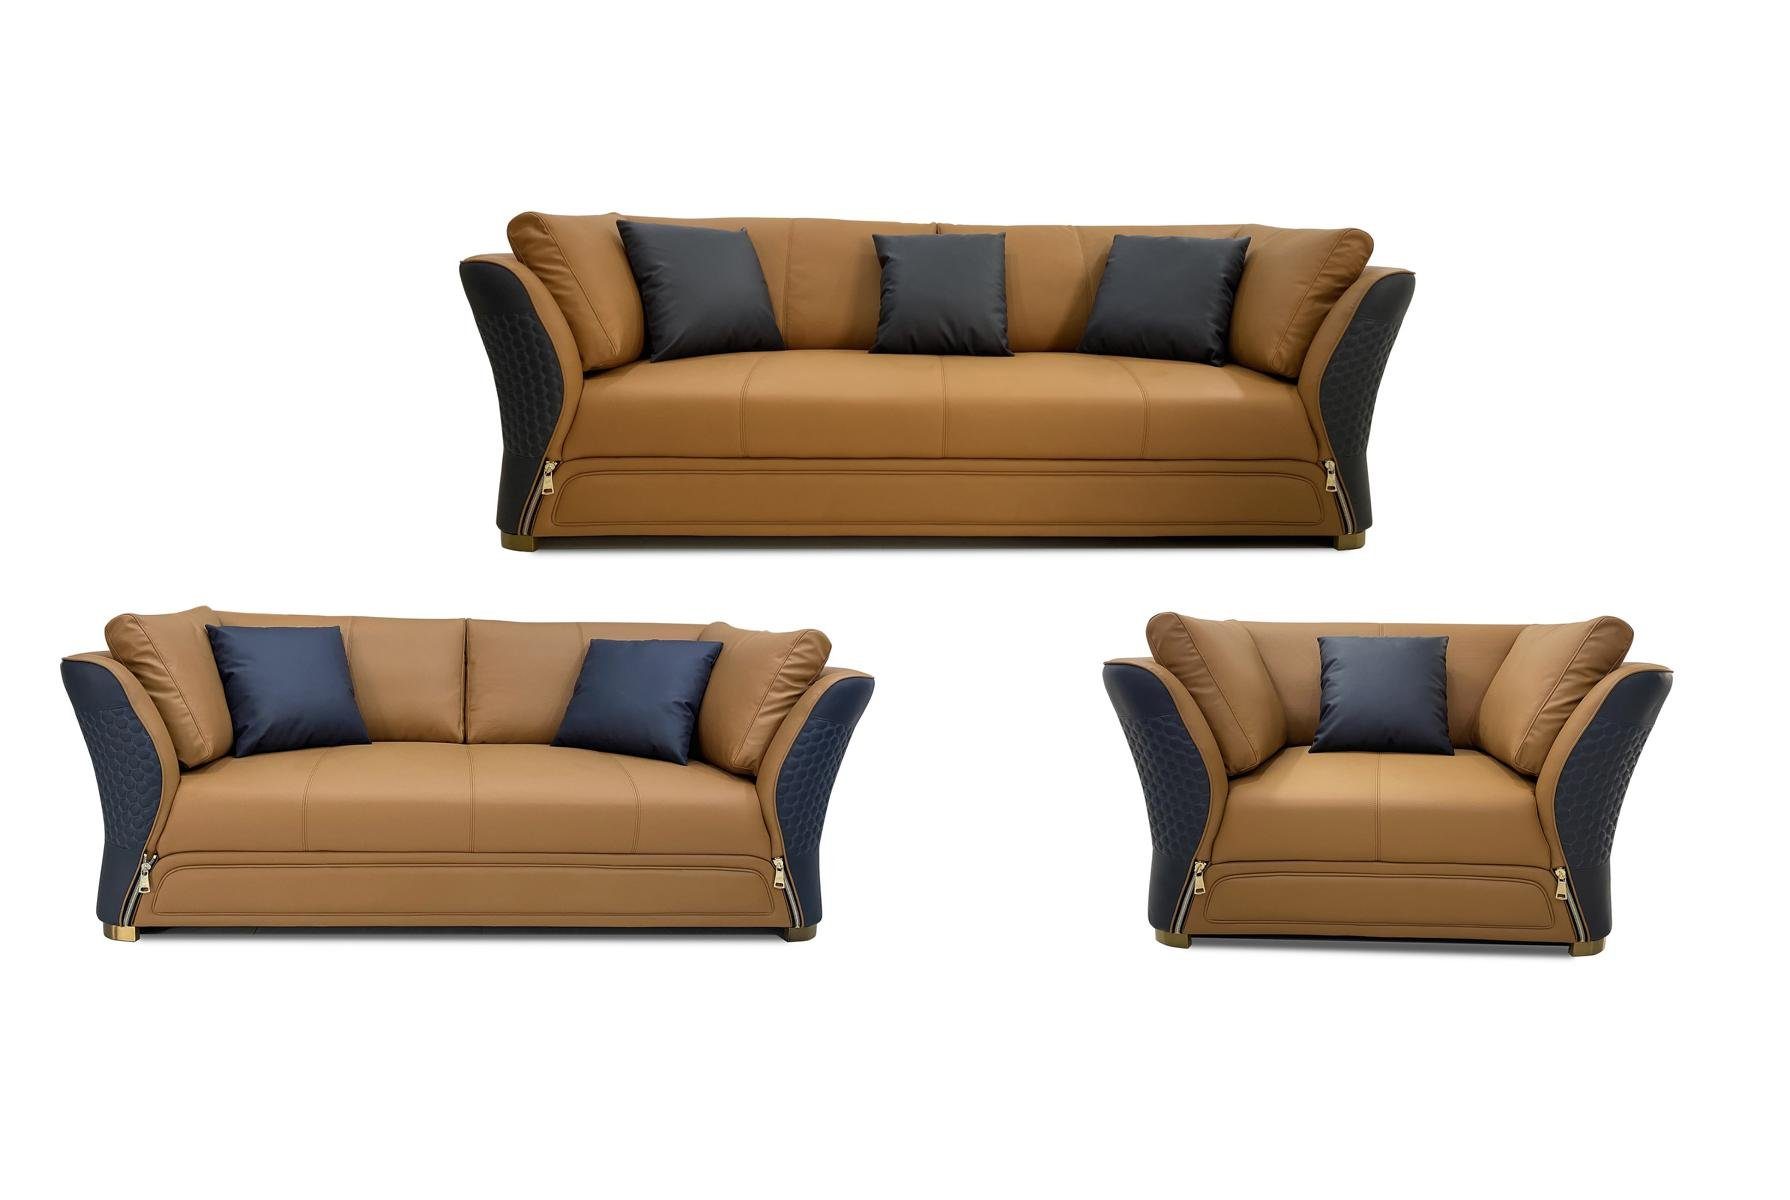 JVmoebel Wohnzimmer-Set, Sofagarnitur 3 1 Sitzer Braun/Schwarz Design Couch Sofa Polster Set Couchen Modern